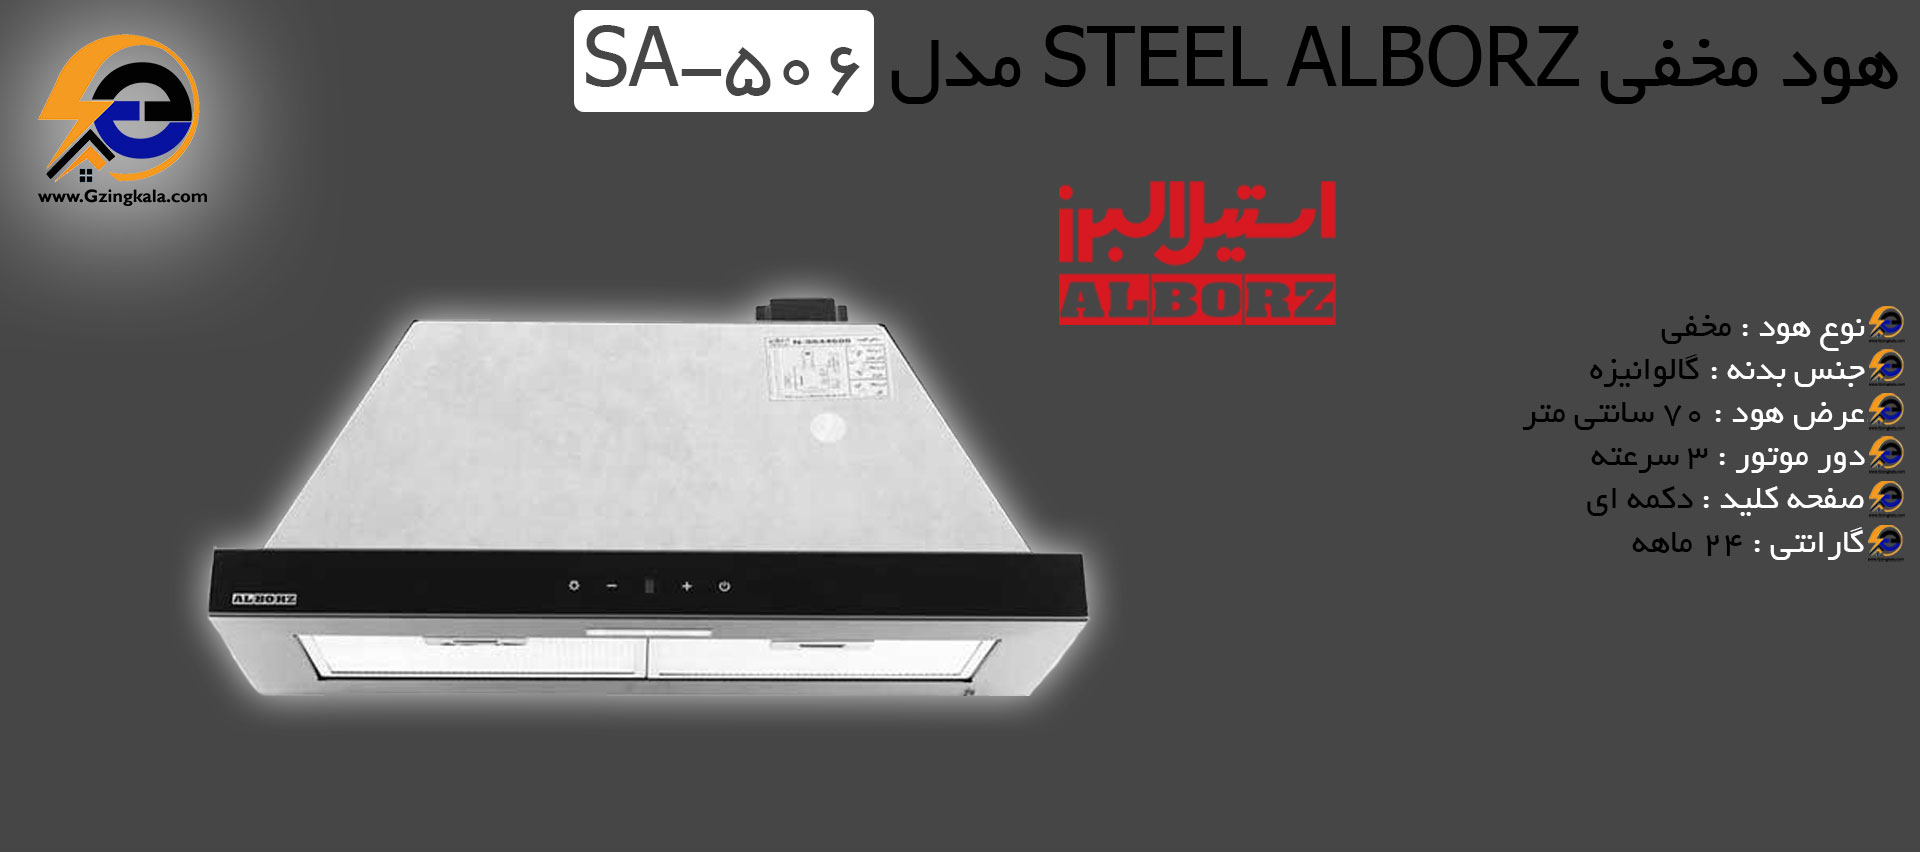 هود مخفی Steel alborz مدل SA-506